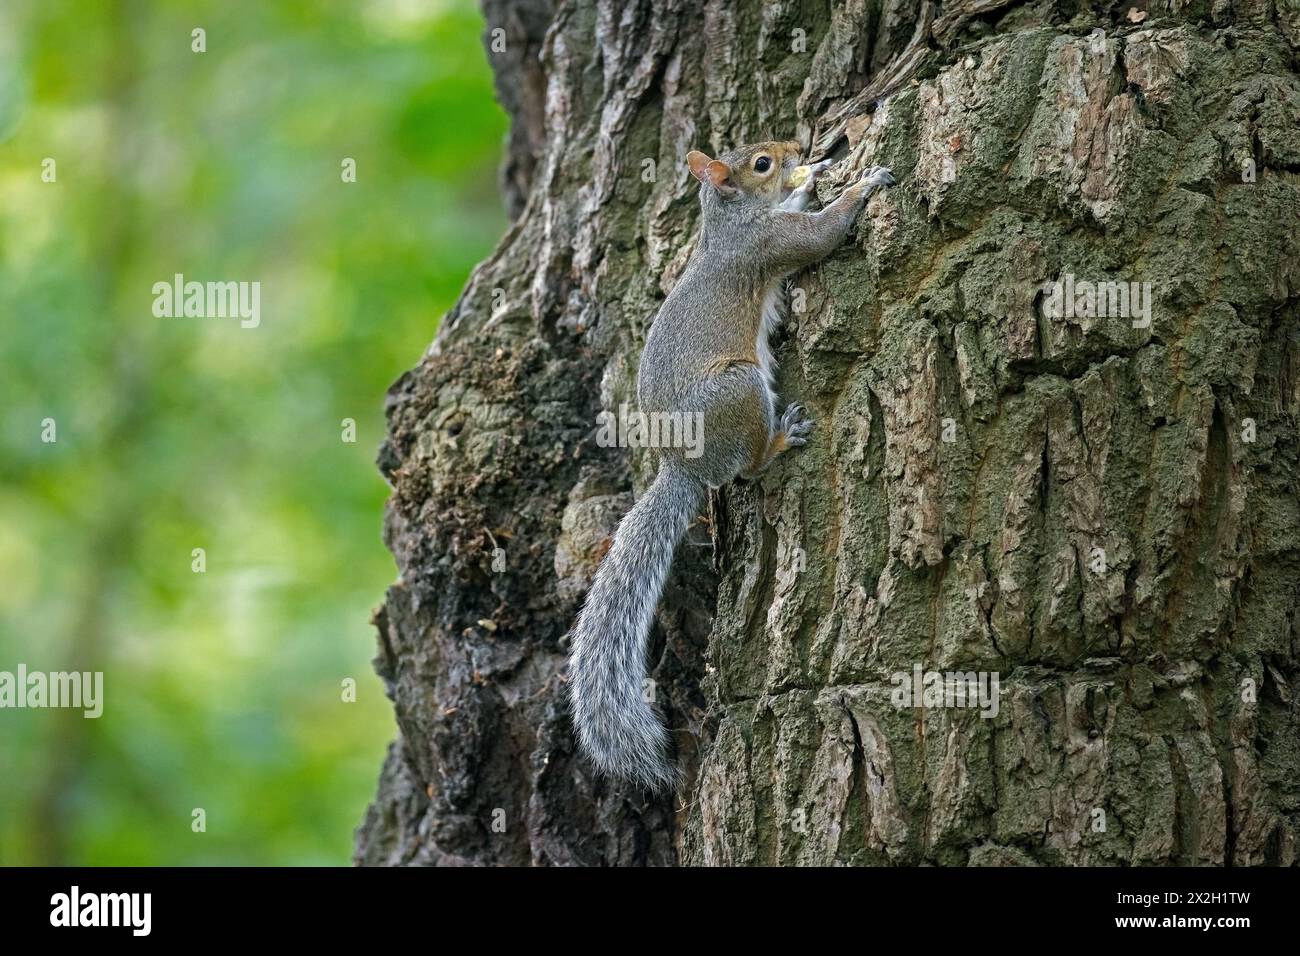 Grauhörnchen (Sciurus carolinensis), eingeführt Arten aus Nordamerika, klettern Baum im Stadtpark in England, Großbritannien Stockfoto